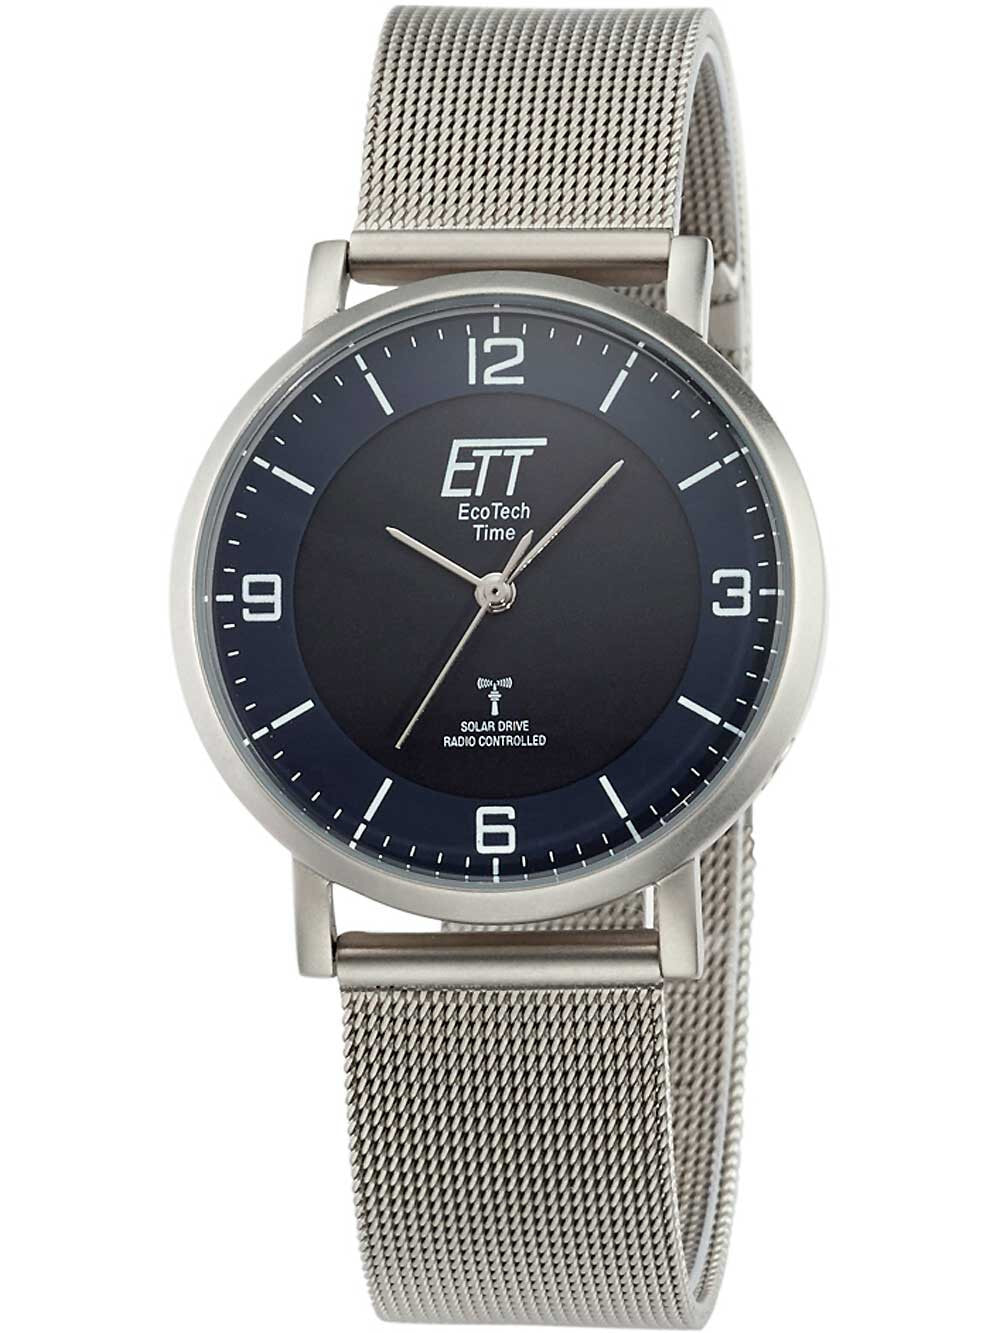 Мужские наручные часы с серебряным браслетом ETT ELS-11409-81M ladies solar radio controlled watch 36mm 5ATM